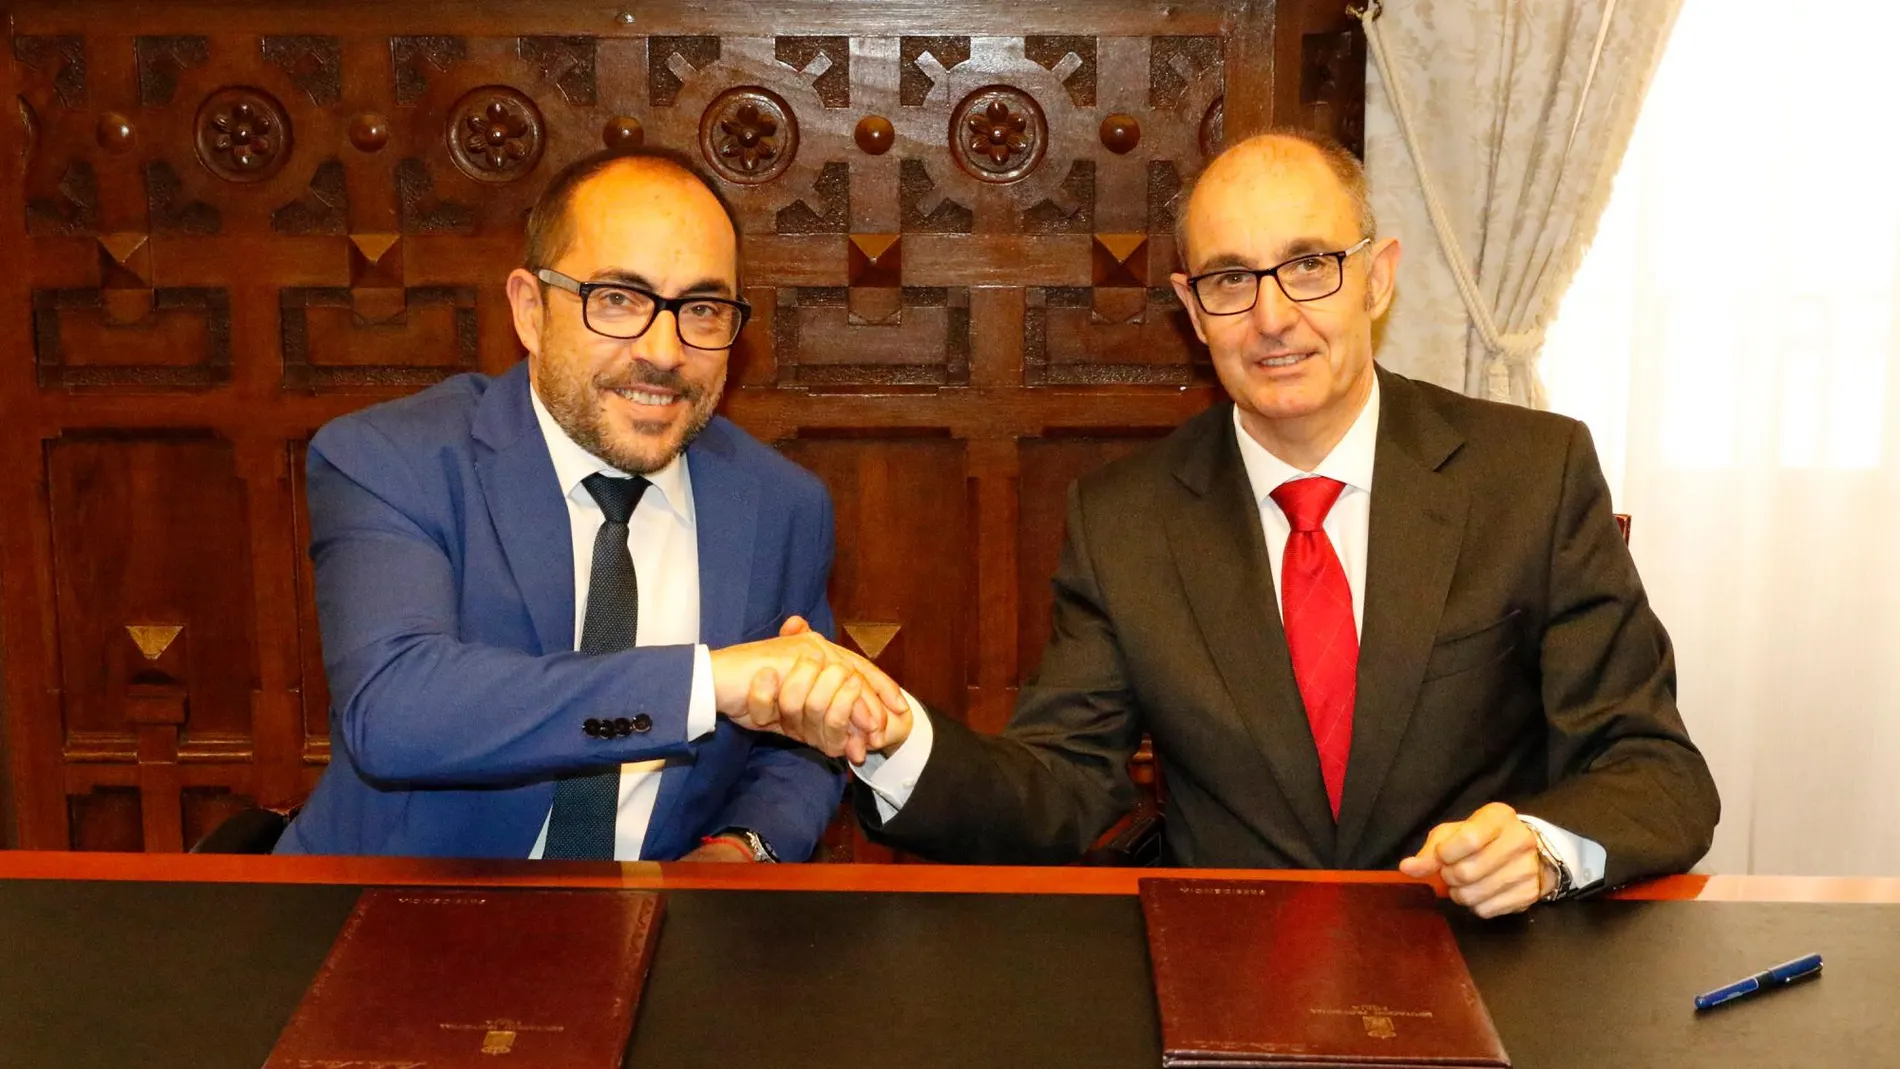 El presidente de la Diputación de Soria, Luis Rey, junto con el director general de Iberaval, Pedro Pisonero, durante la firma del convenio